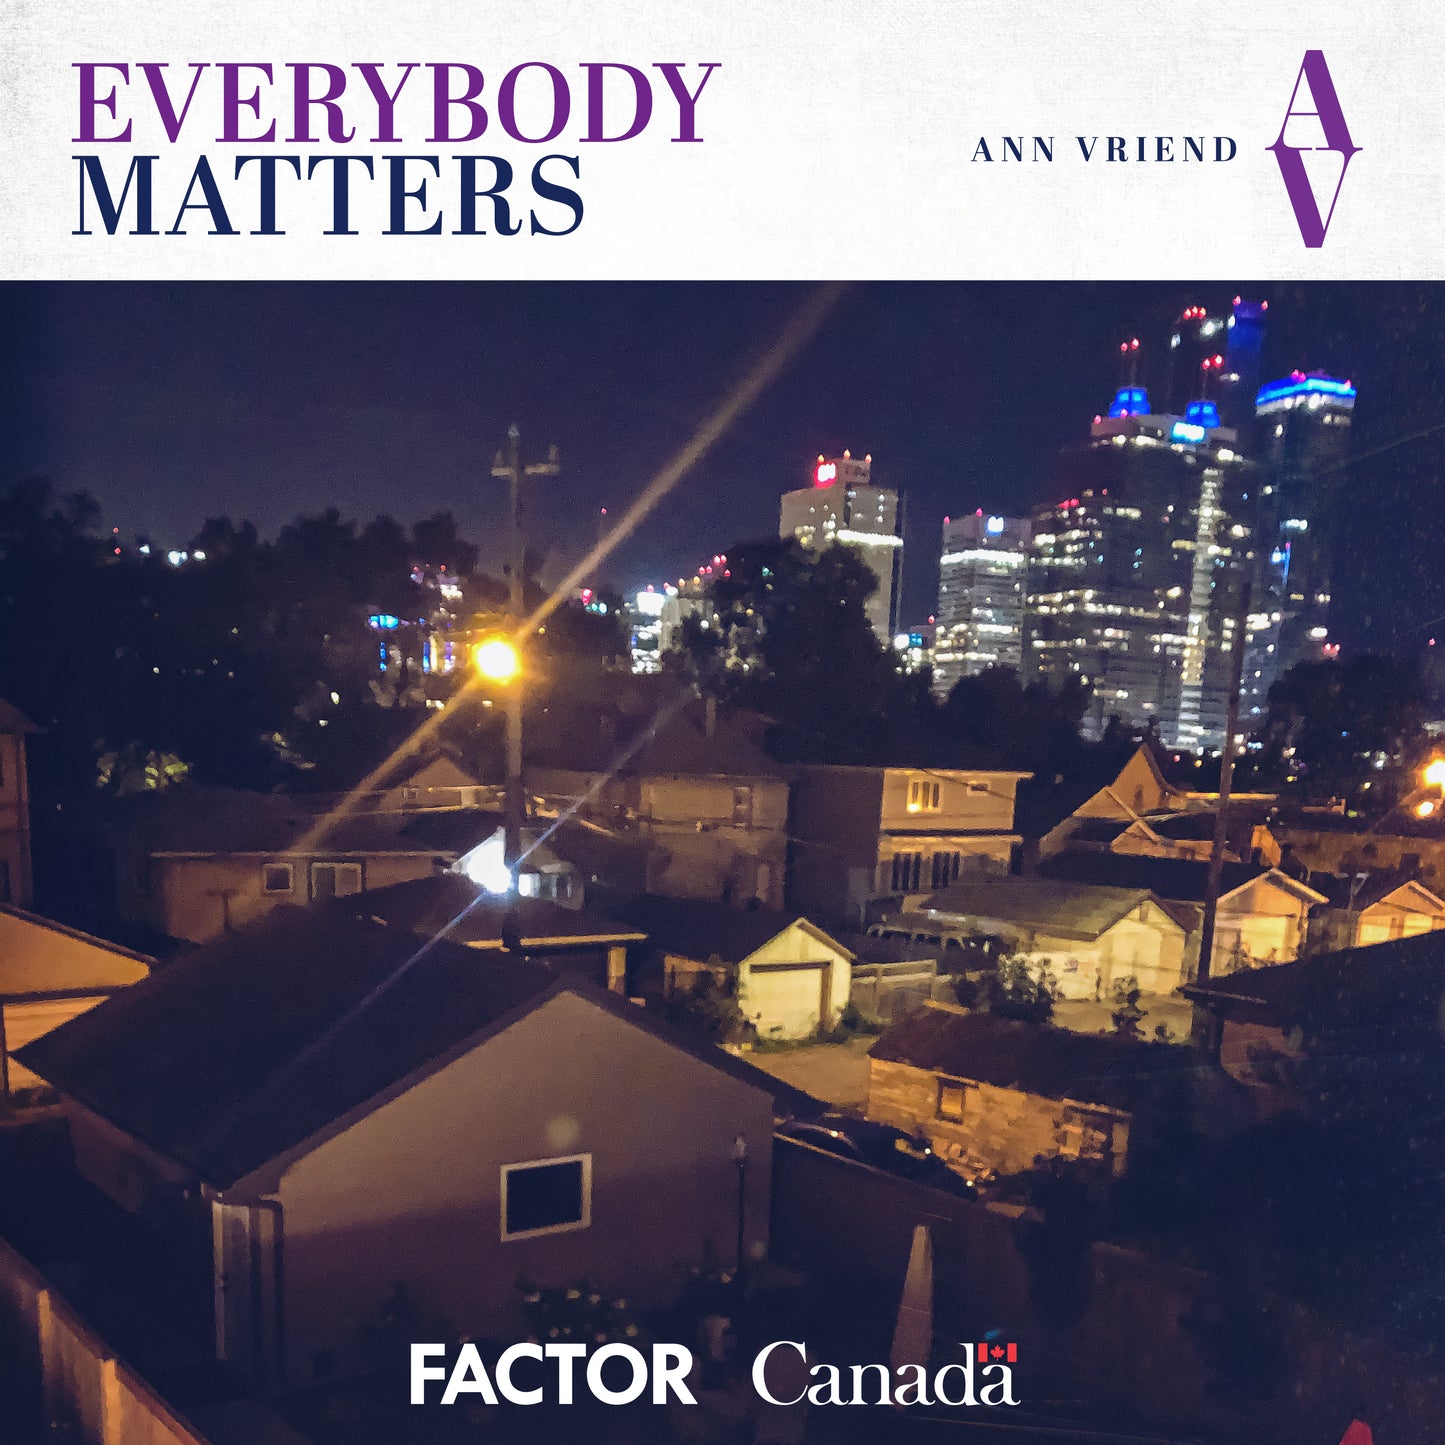 Everybody Matters — Digital Album Download of brand new AV full length album